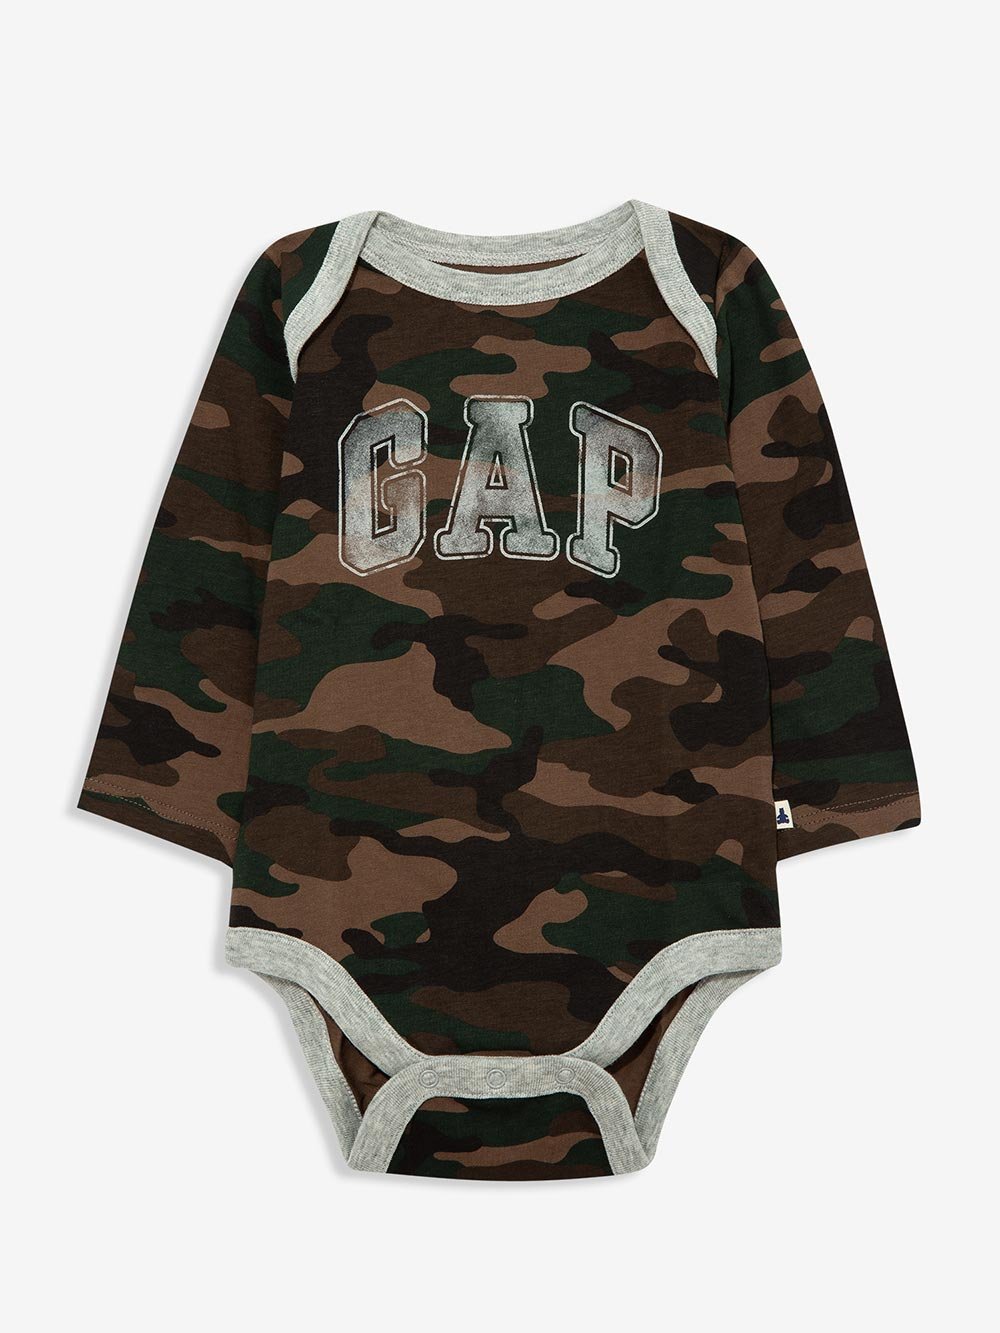 Gap logo Bodysuit product image